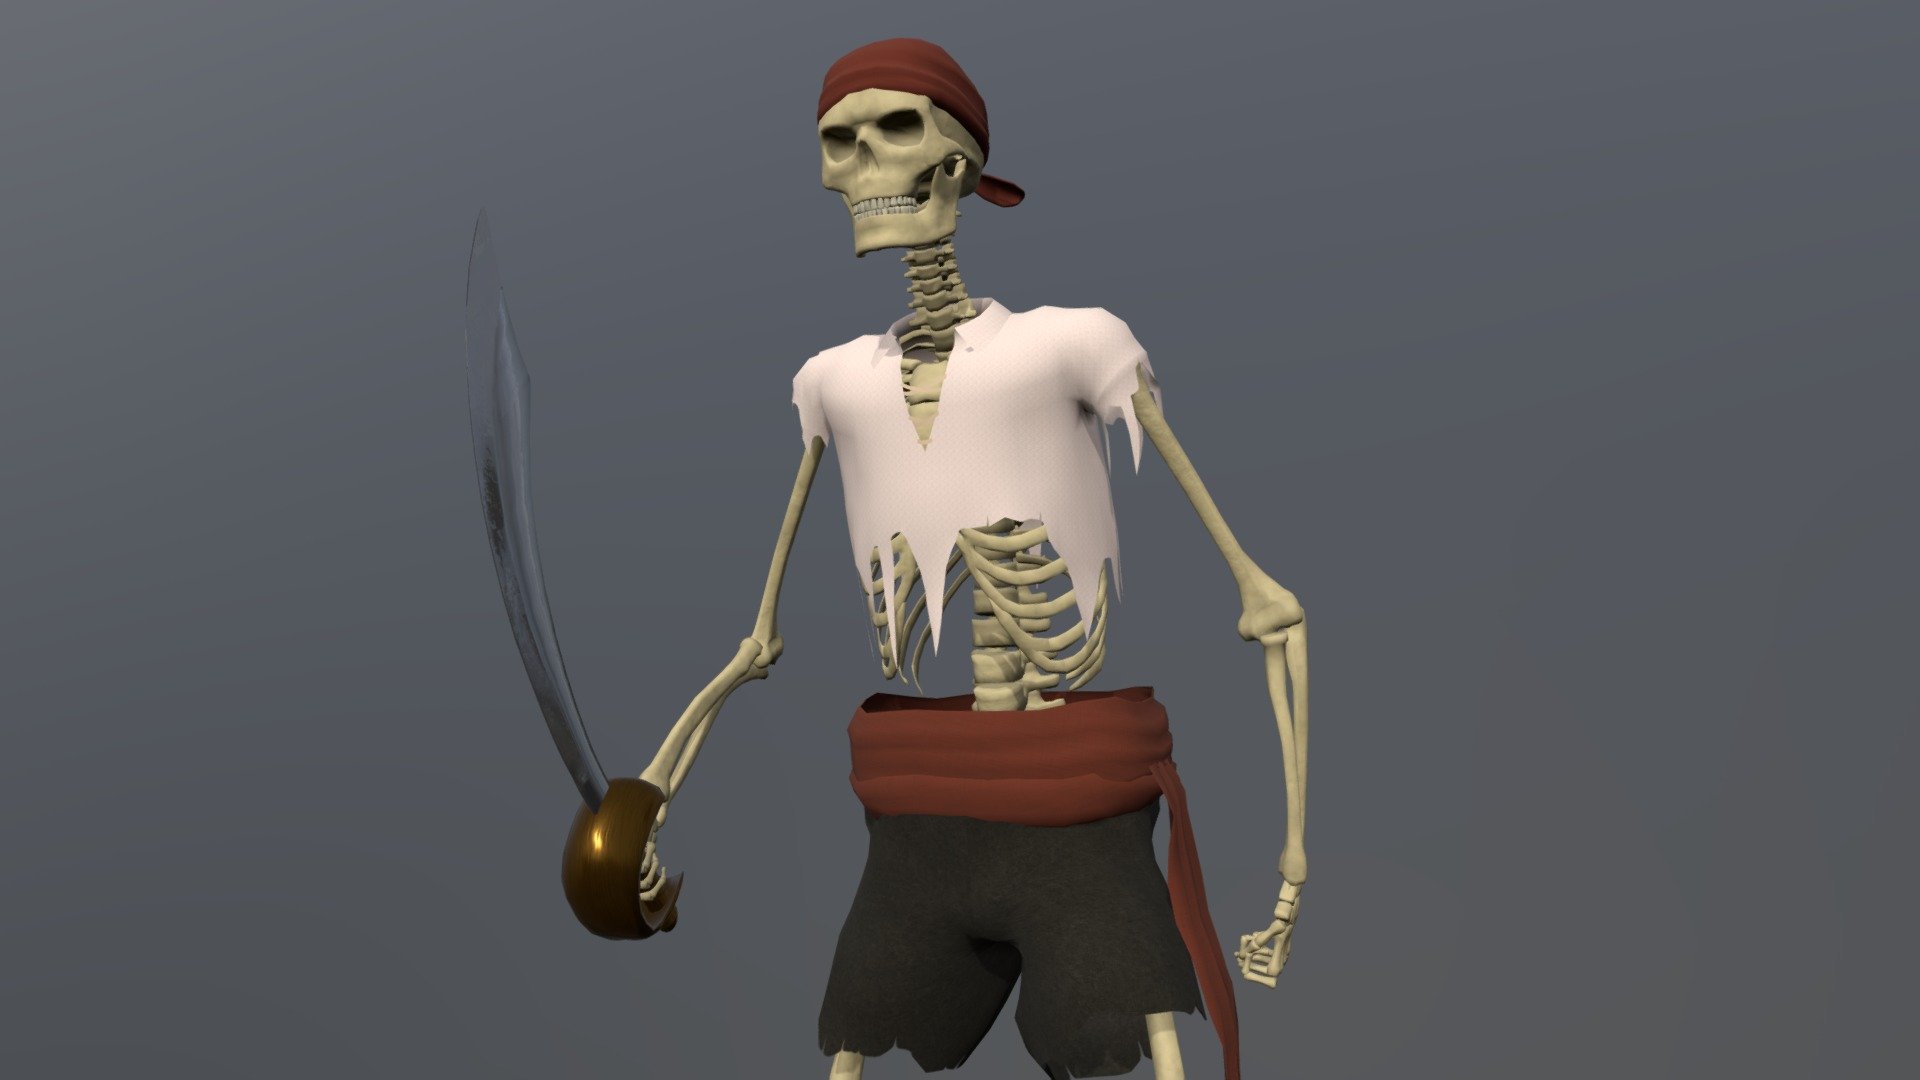 Animated skeleton pirate. Modeled in Blender and textured in Substance Designer.
Updated version of my older skeleton model 3d model